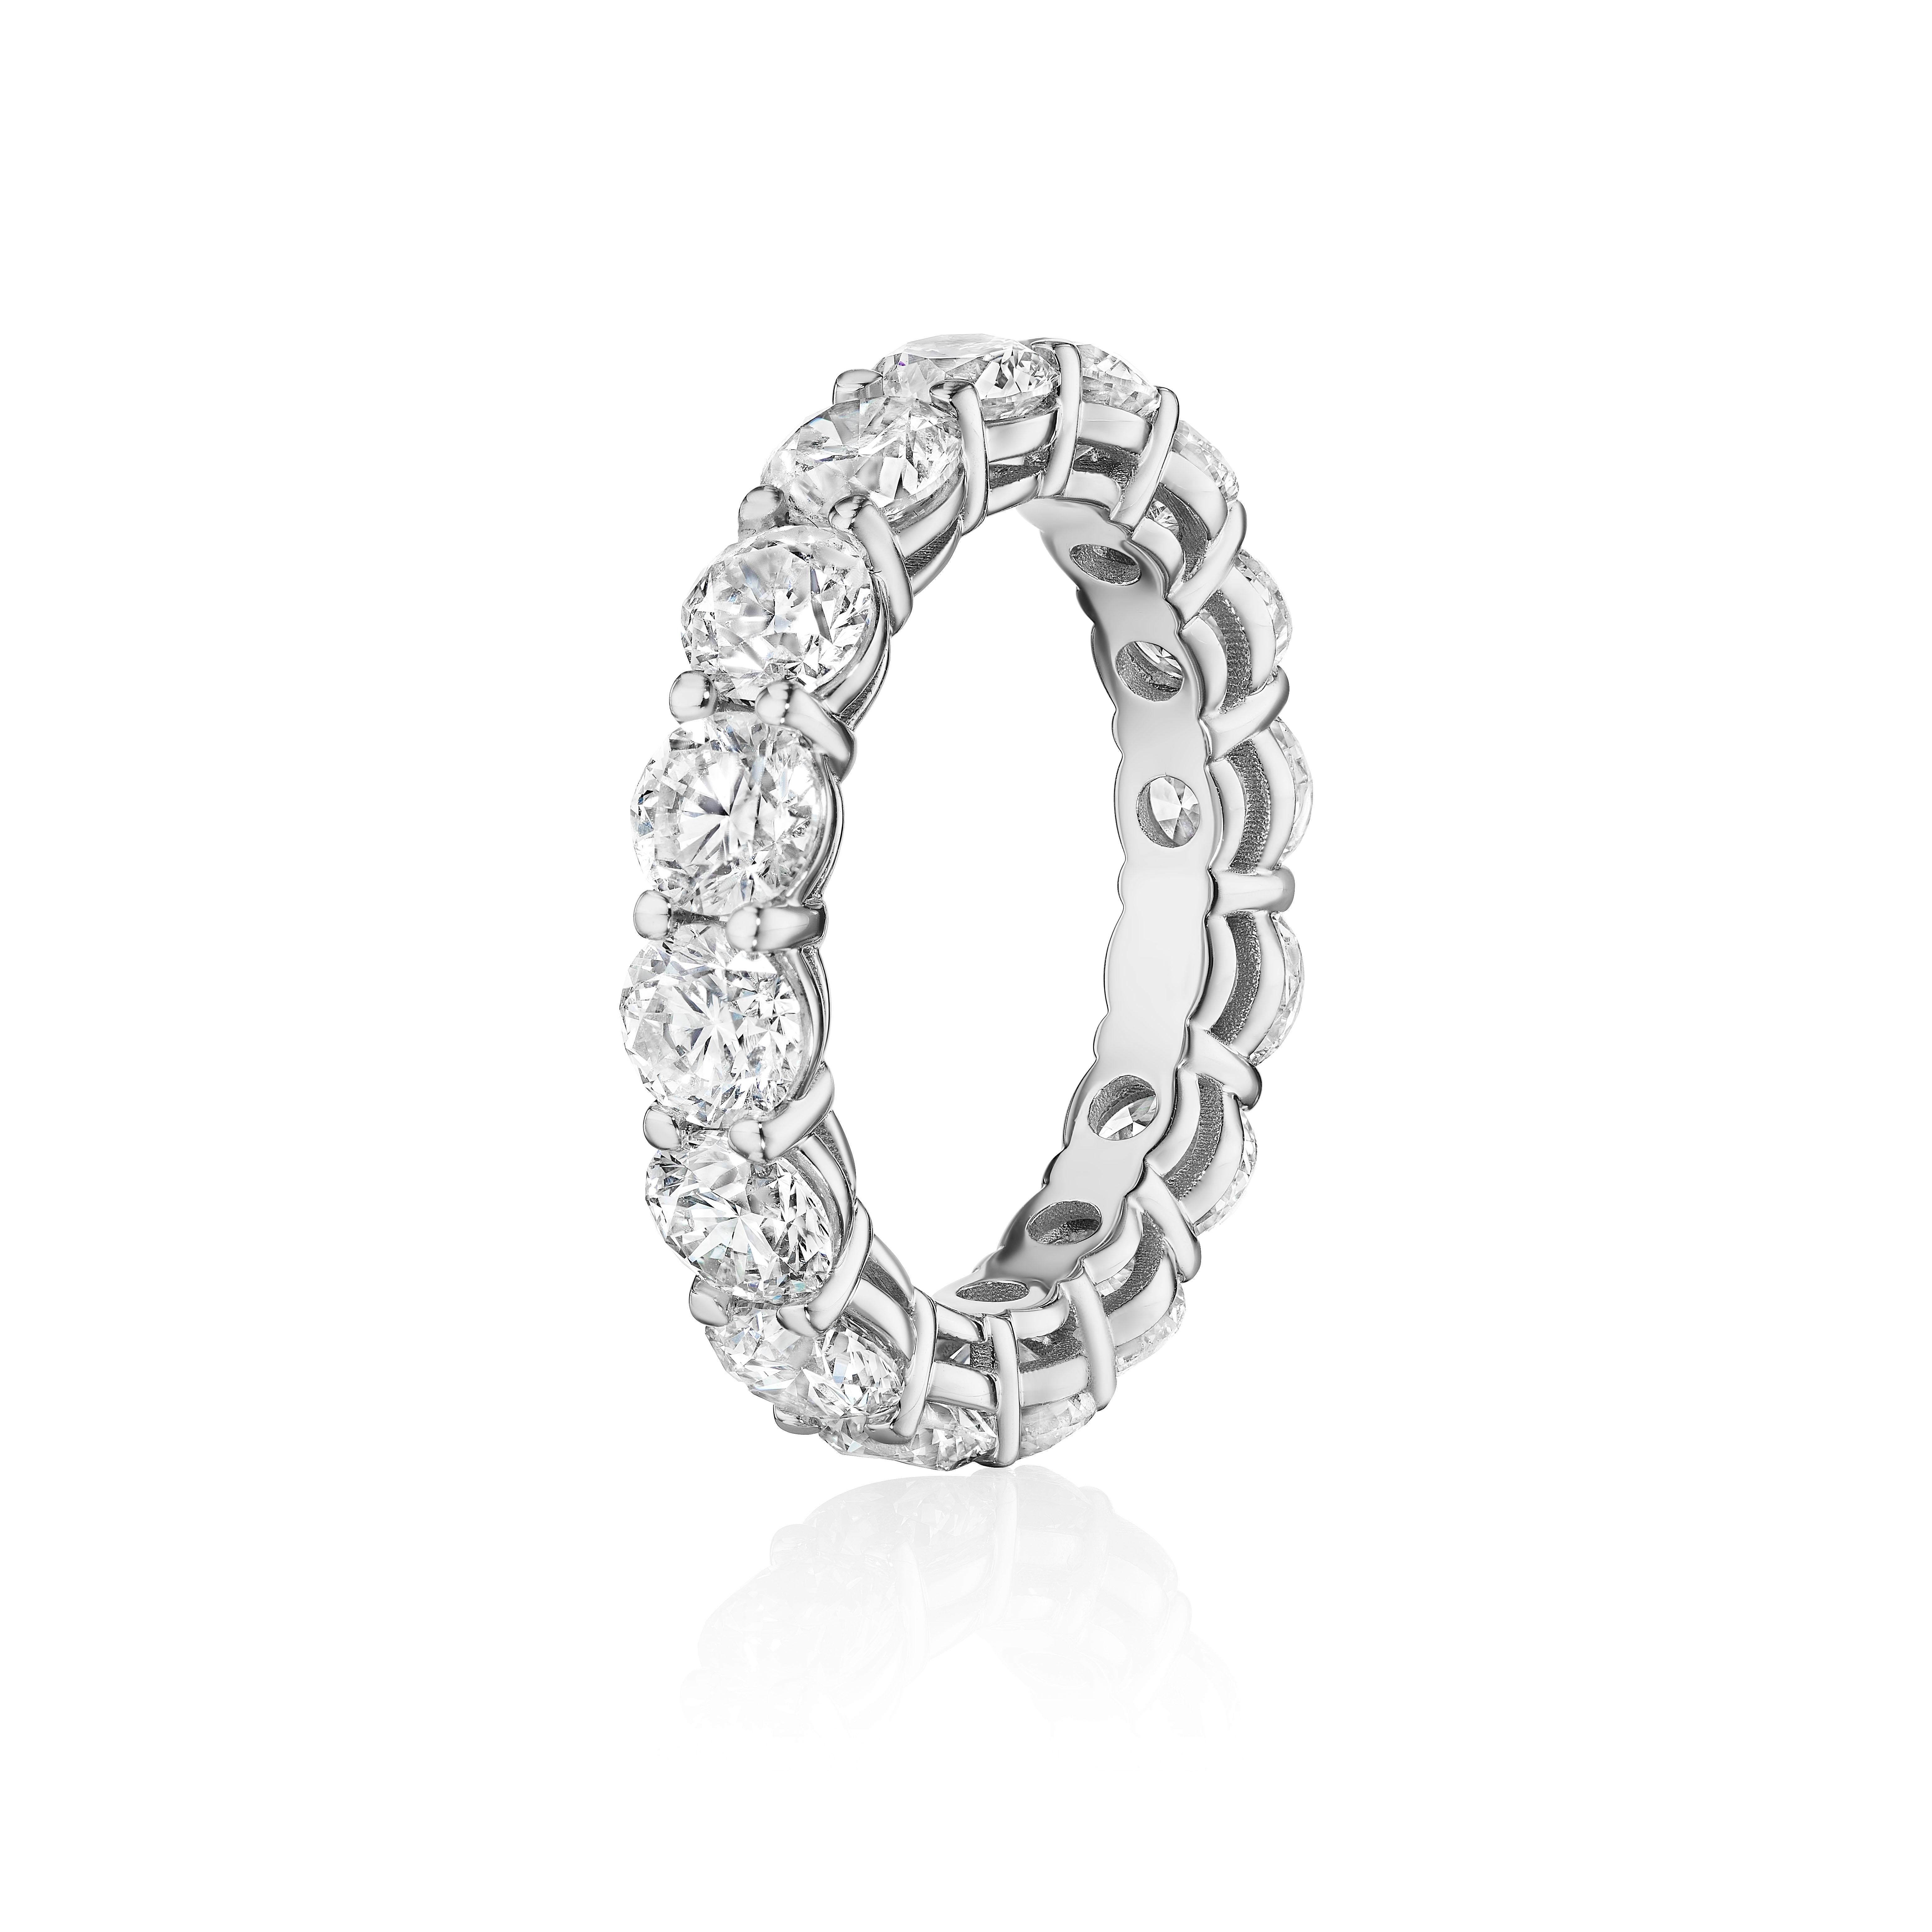 Fabriqué en or 18KT, ce bracelet d'éternité est composé de 16 diamants ronds de taille brillante qui encerclent le doigt. L'anneau a un poids total combiné d'environ 5,00 carats. Les diamants sont sertis dans une monture partagée. Porté seul ou